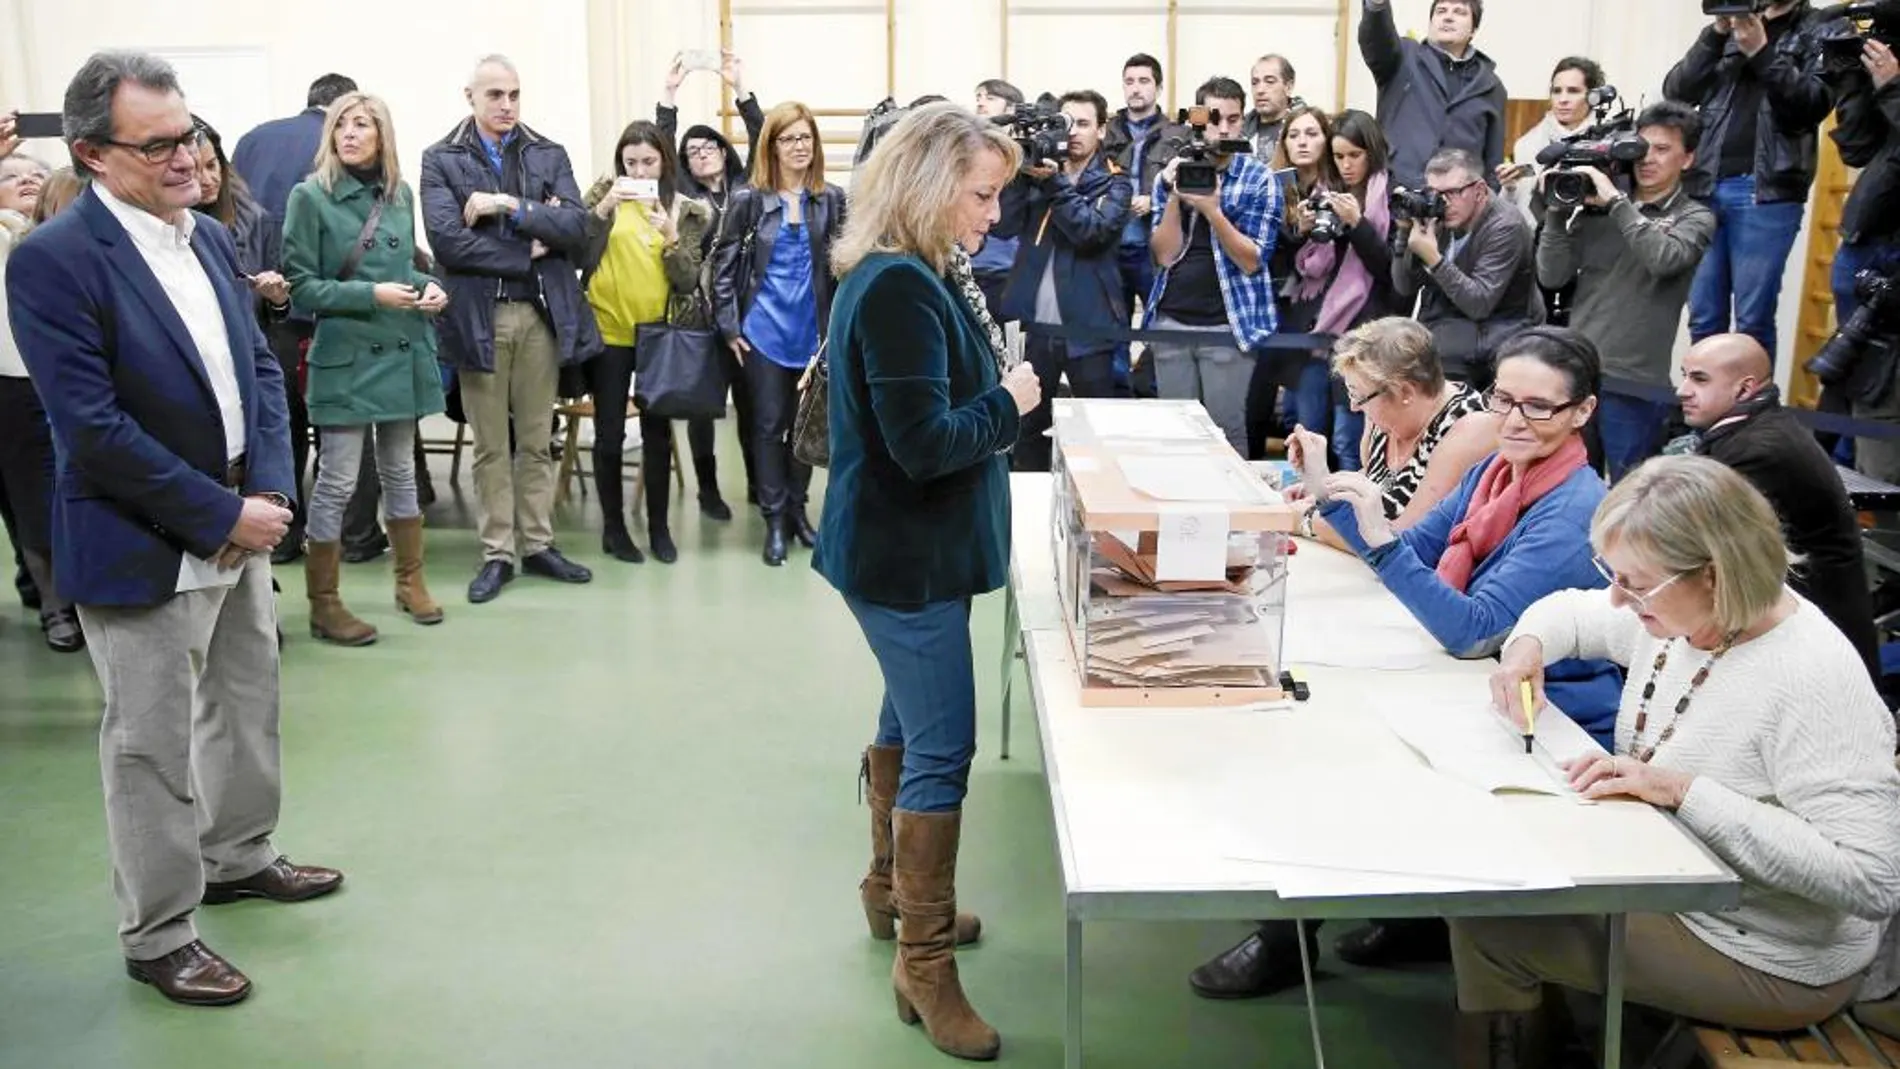 Artur Mas espera su turno para depositar el voto en un colegio de Barcelona detrás de su esposa, Helena Rakosnik